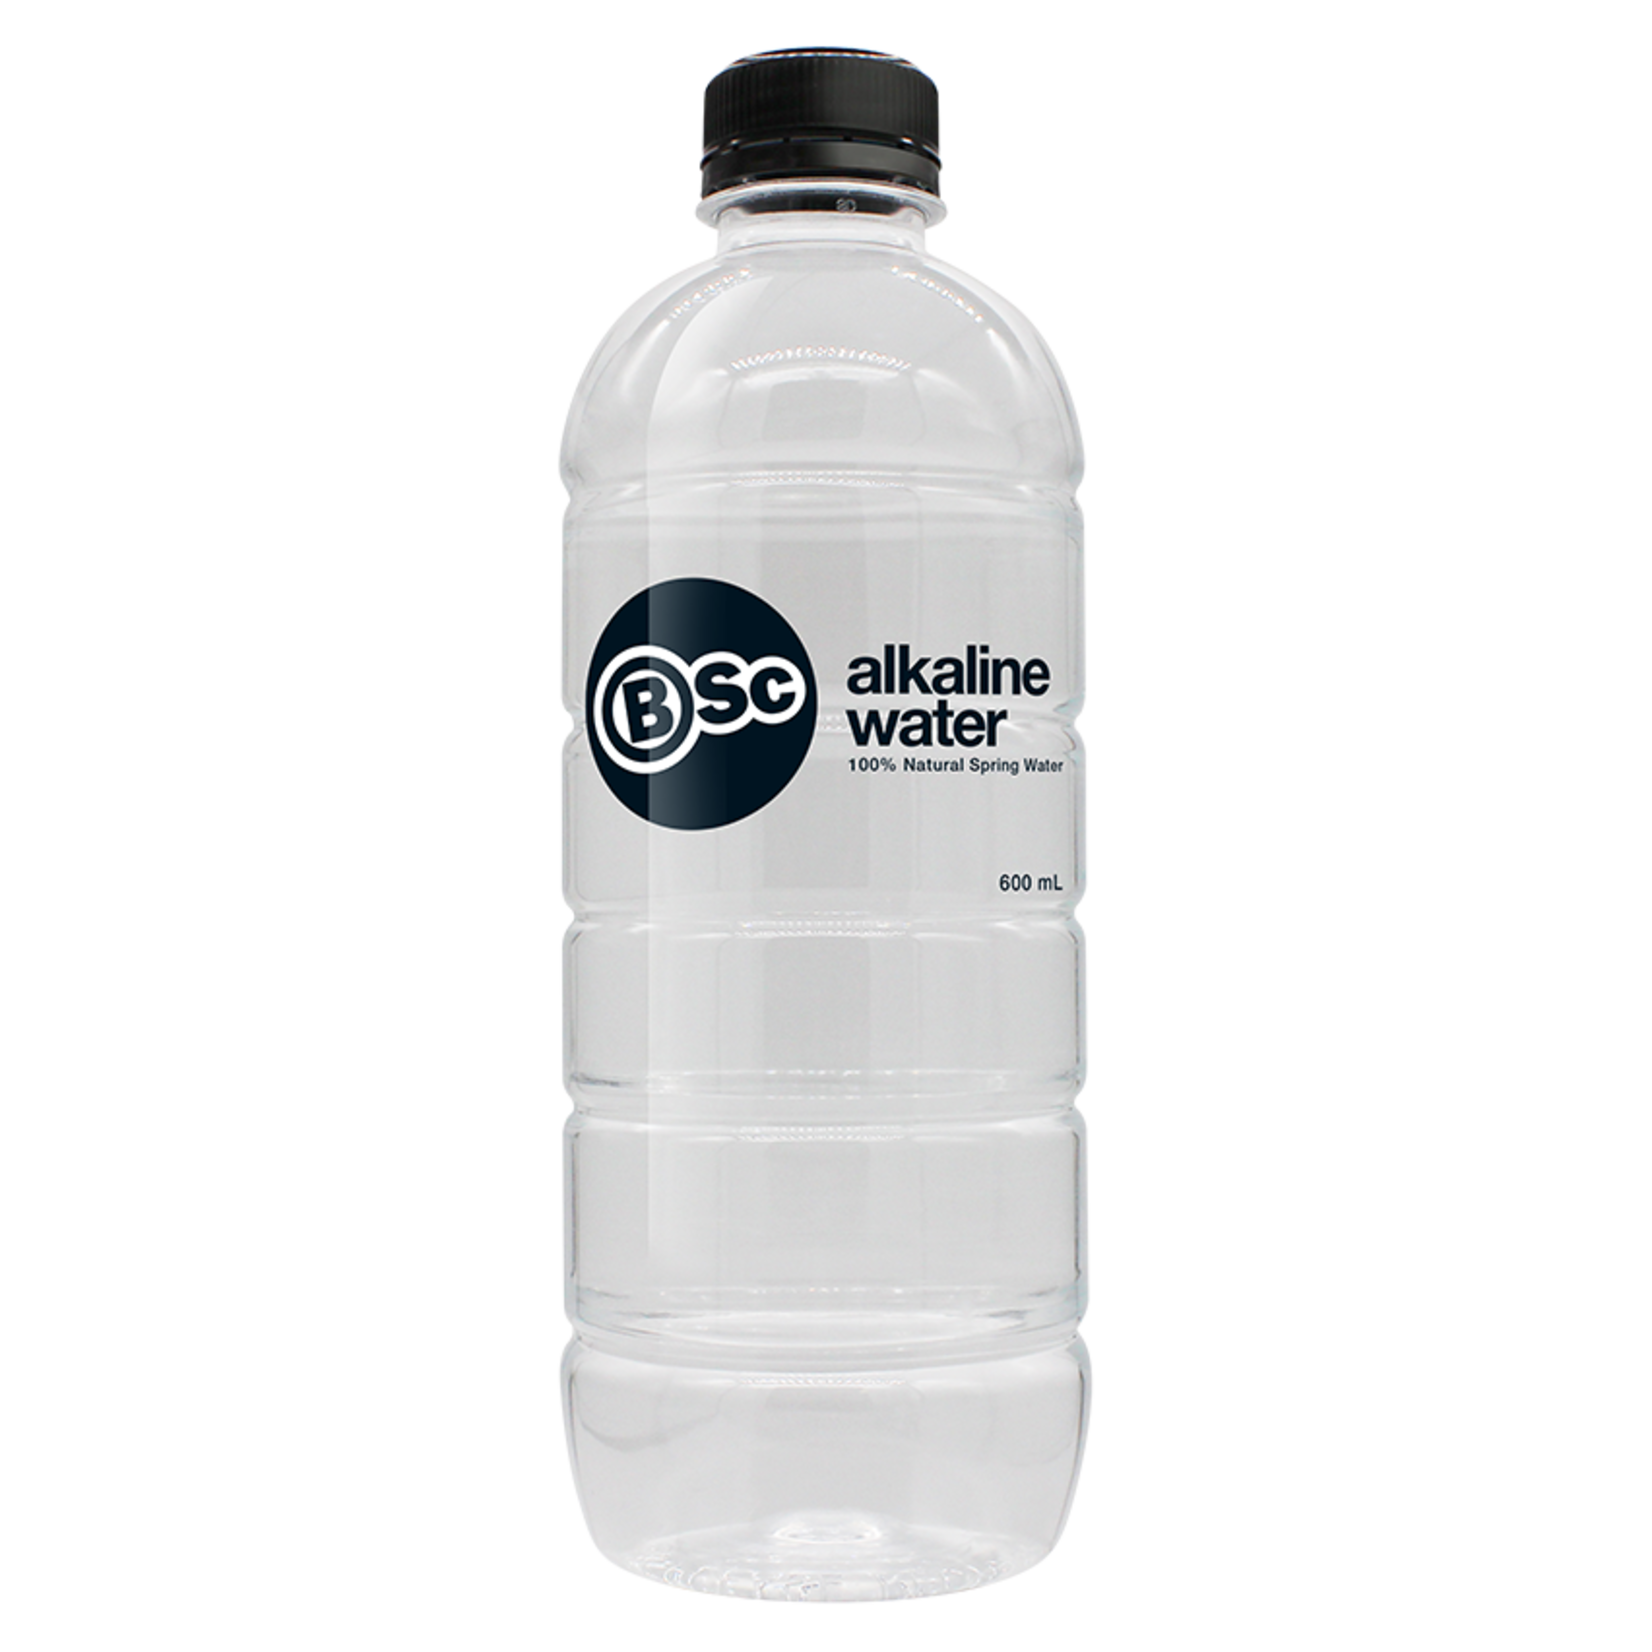 Body Science BSC Alkaline Water